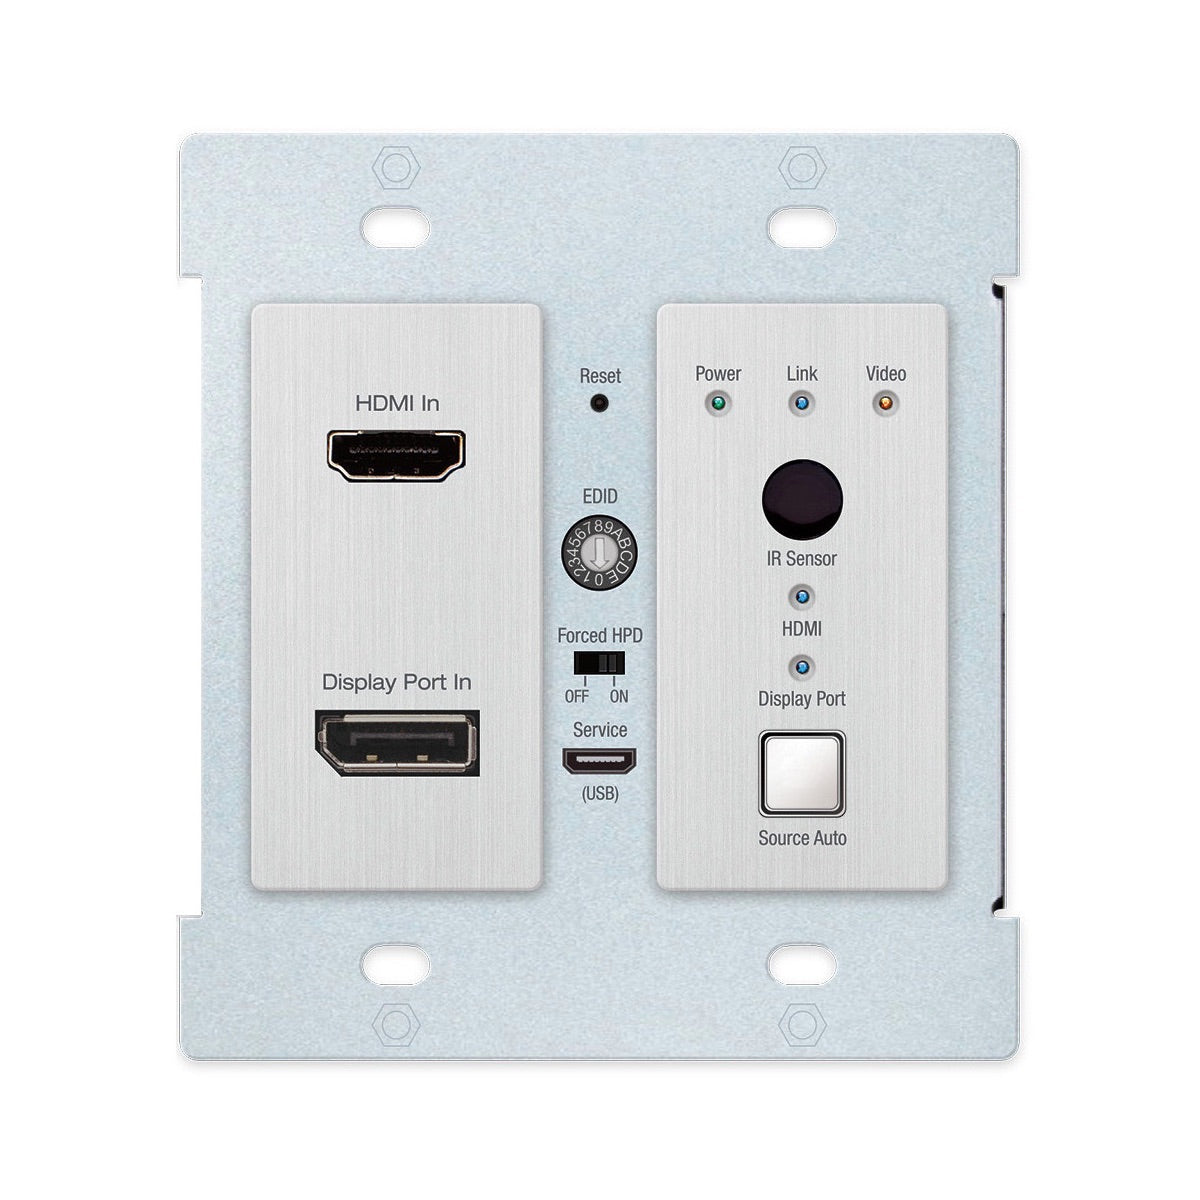 Key Digital KD-X2x1WDTx - 4K/18G HDBaseT Wall Plate Switcher, HDMI & DisplayPort, front